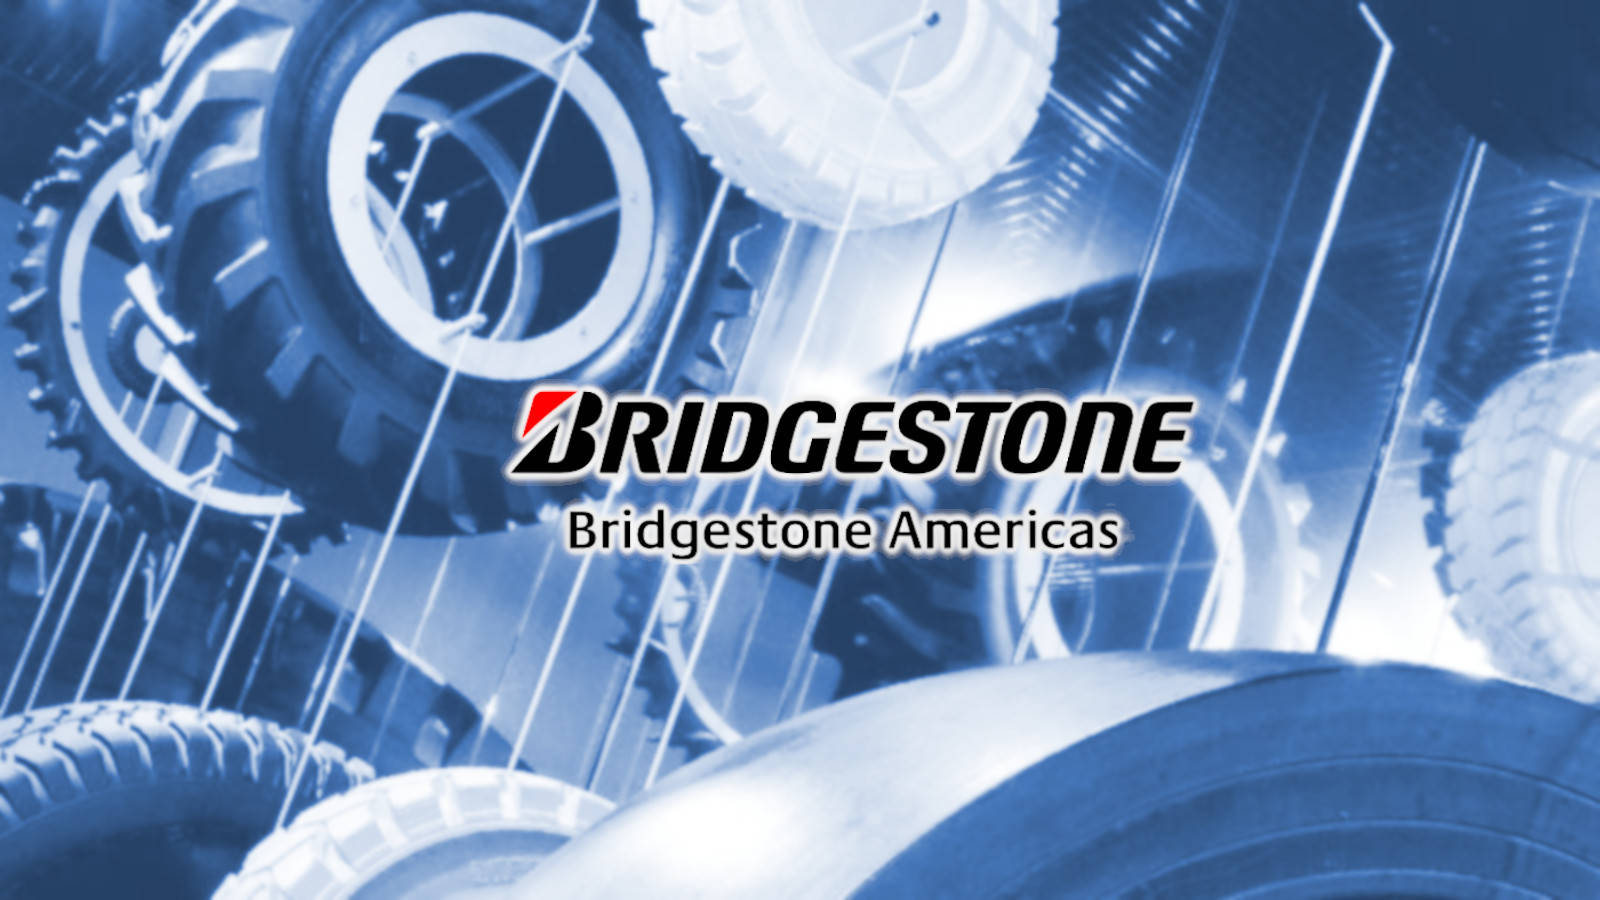 Bridgestone 1600 X 900 Wallpaper